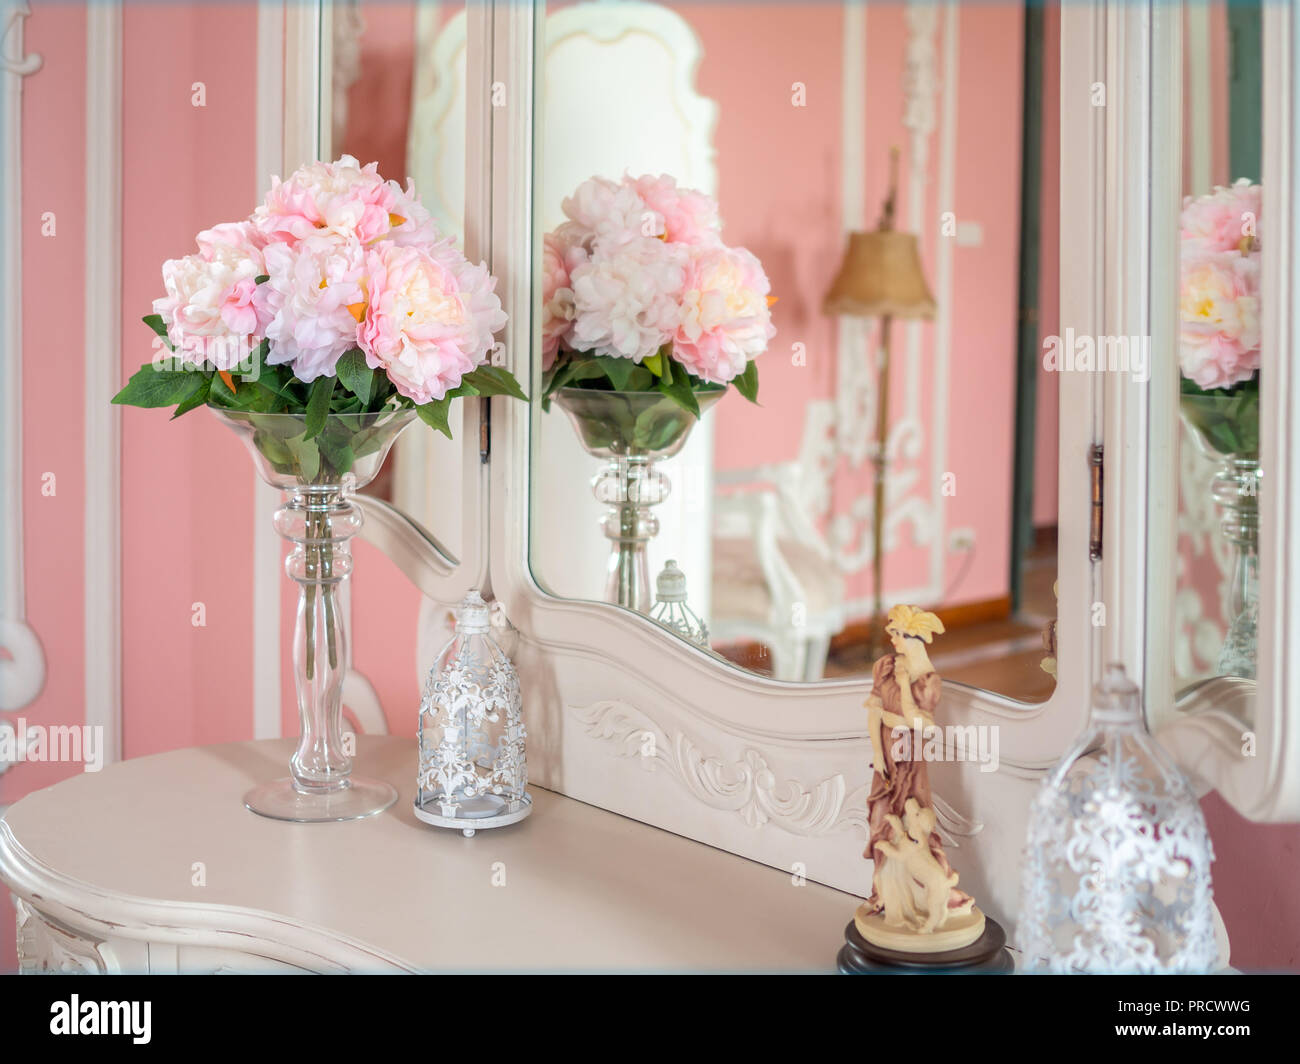 Bouquet de fleurs roses en vase en verre blanc sur la table et sweet boudoir chambre rose. Décoration Vintage style. Banque D'Images